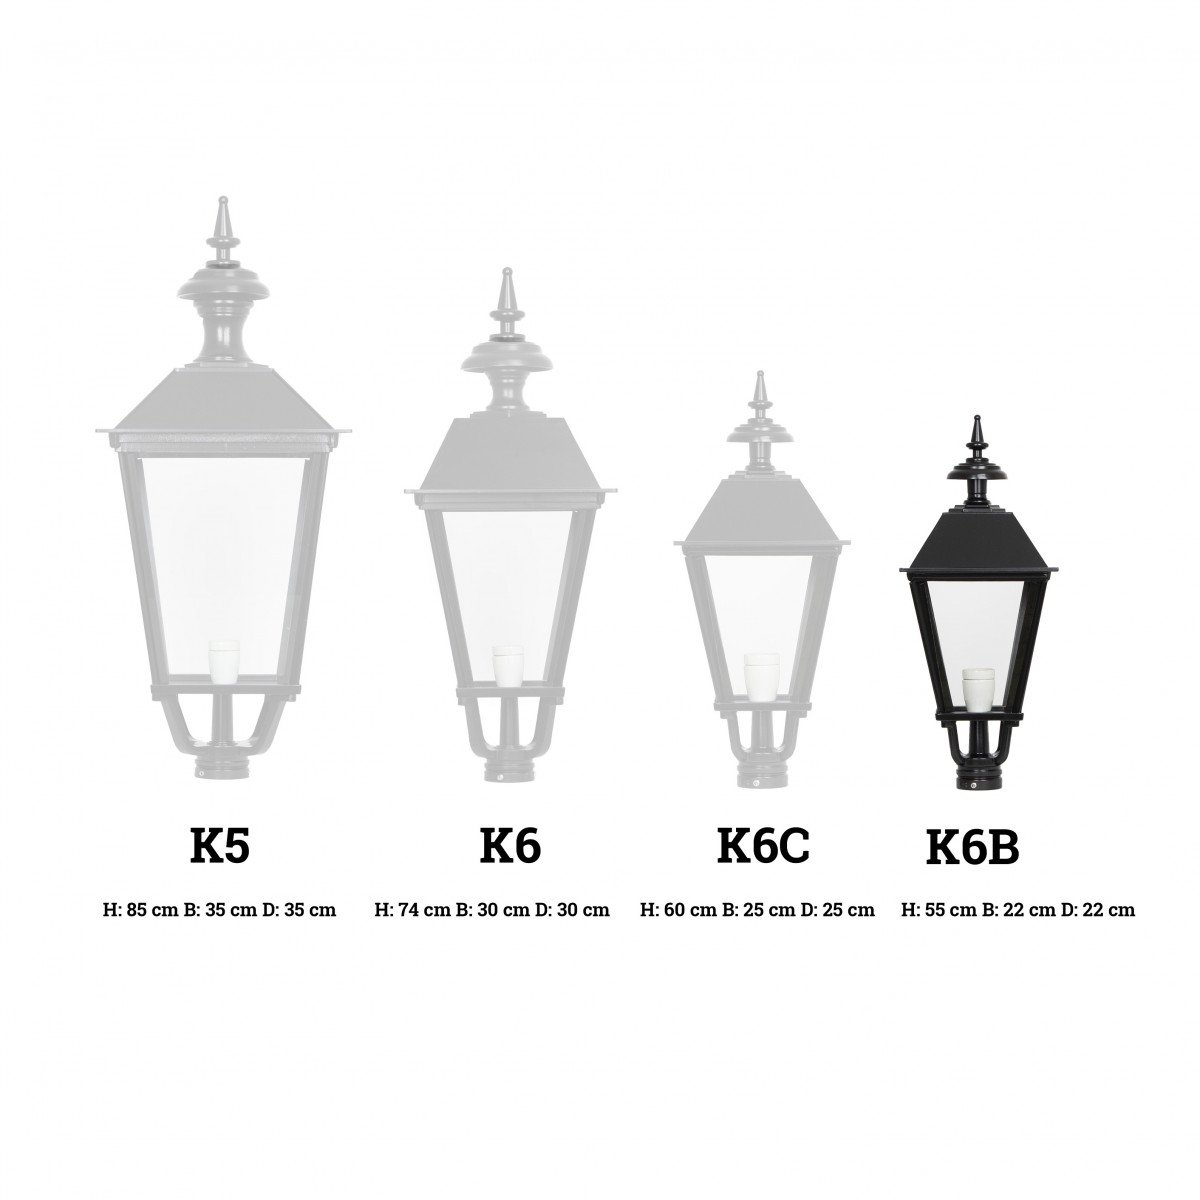 Lanterne carrée K6B éclairage d'extérieur de KS Lighting 